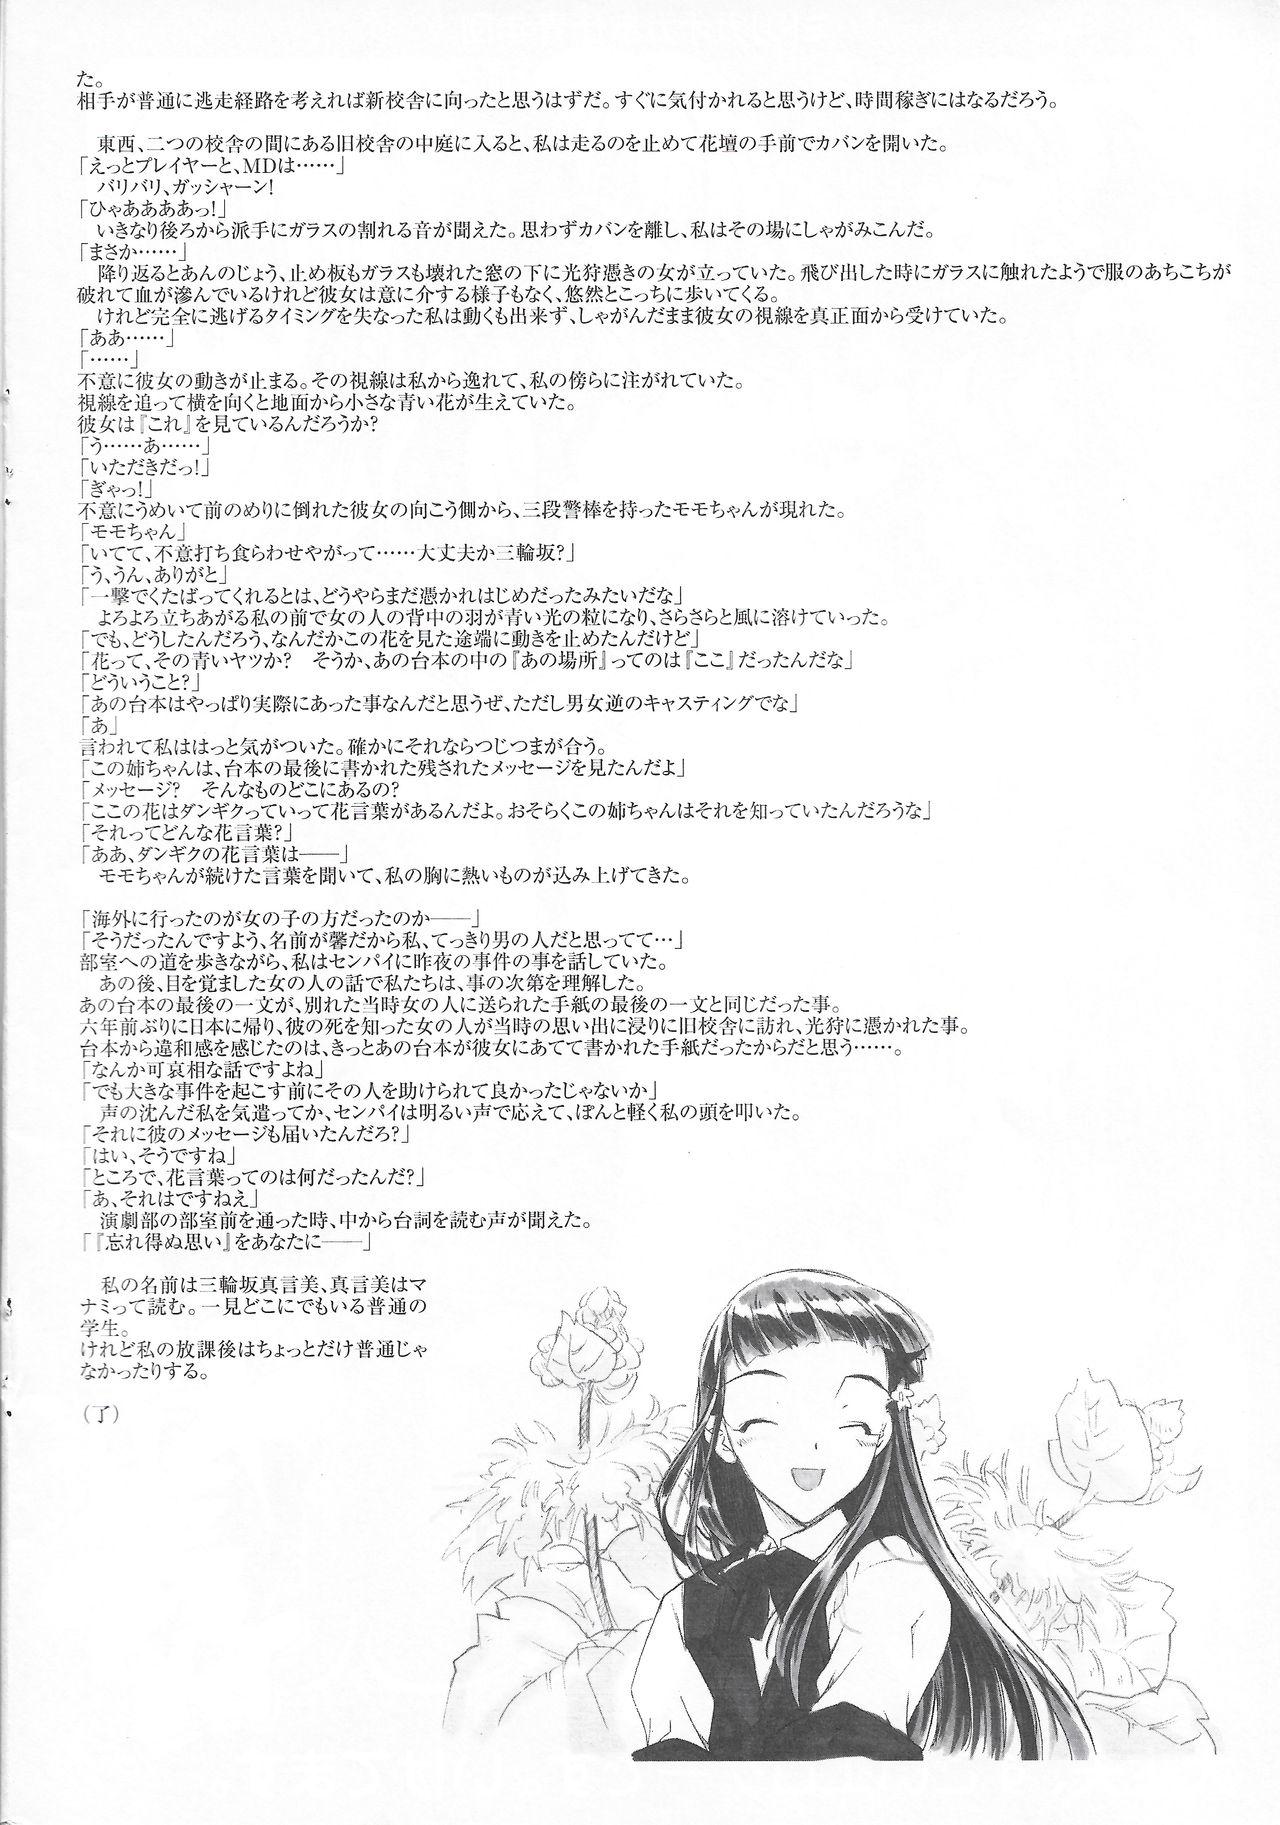 Arisu no Denchi Bakudan Vol. 17 6